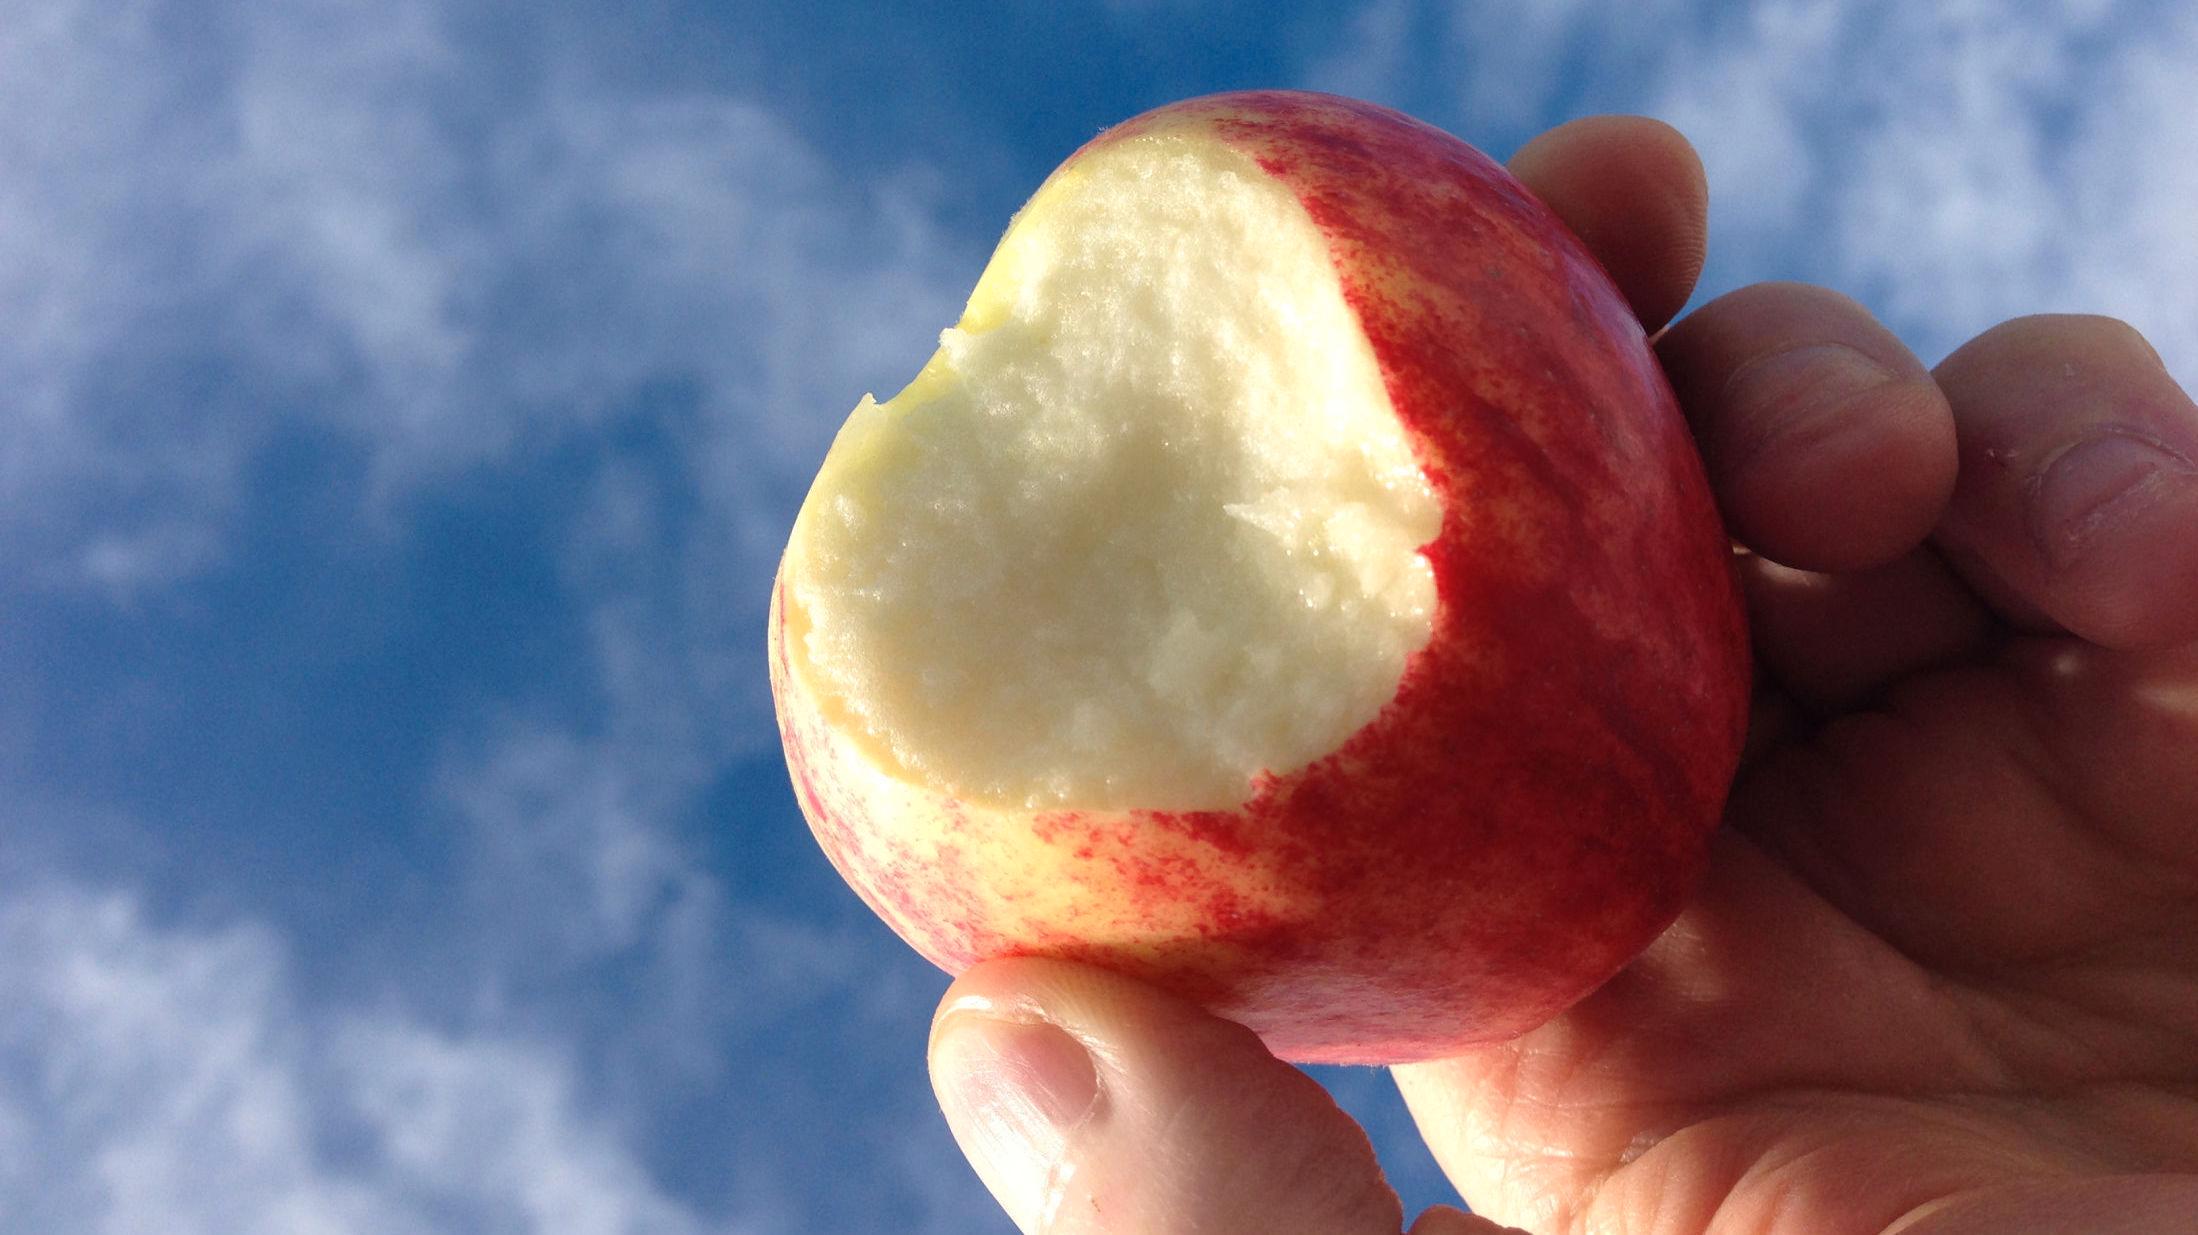 MANGE VARIANTER: Den norske eplesesongen starter rundt september, og det finnes en rekke forskjellige varianter - som Summerred, Gravenstein og Aroma. Foto: Jan Ovind/VG